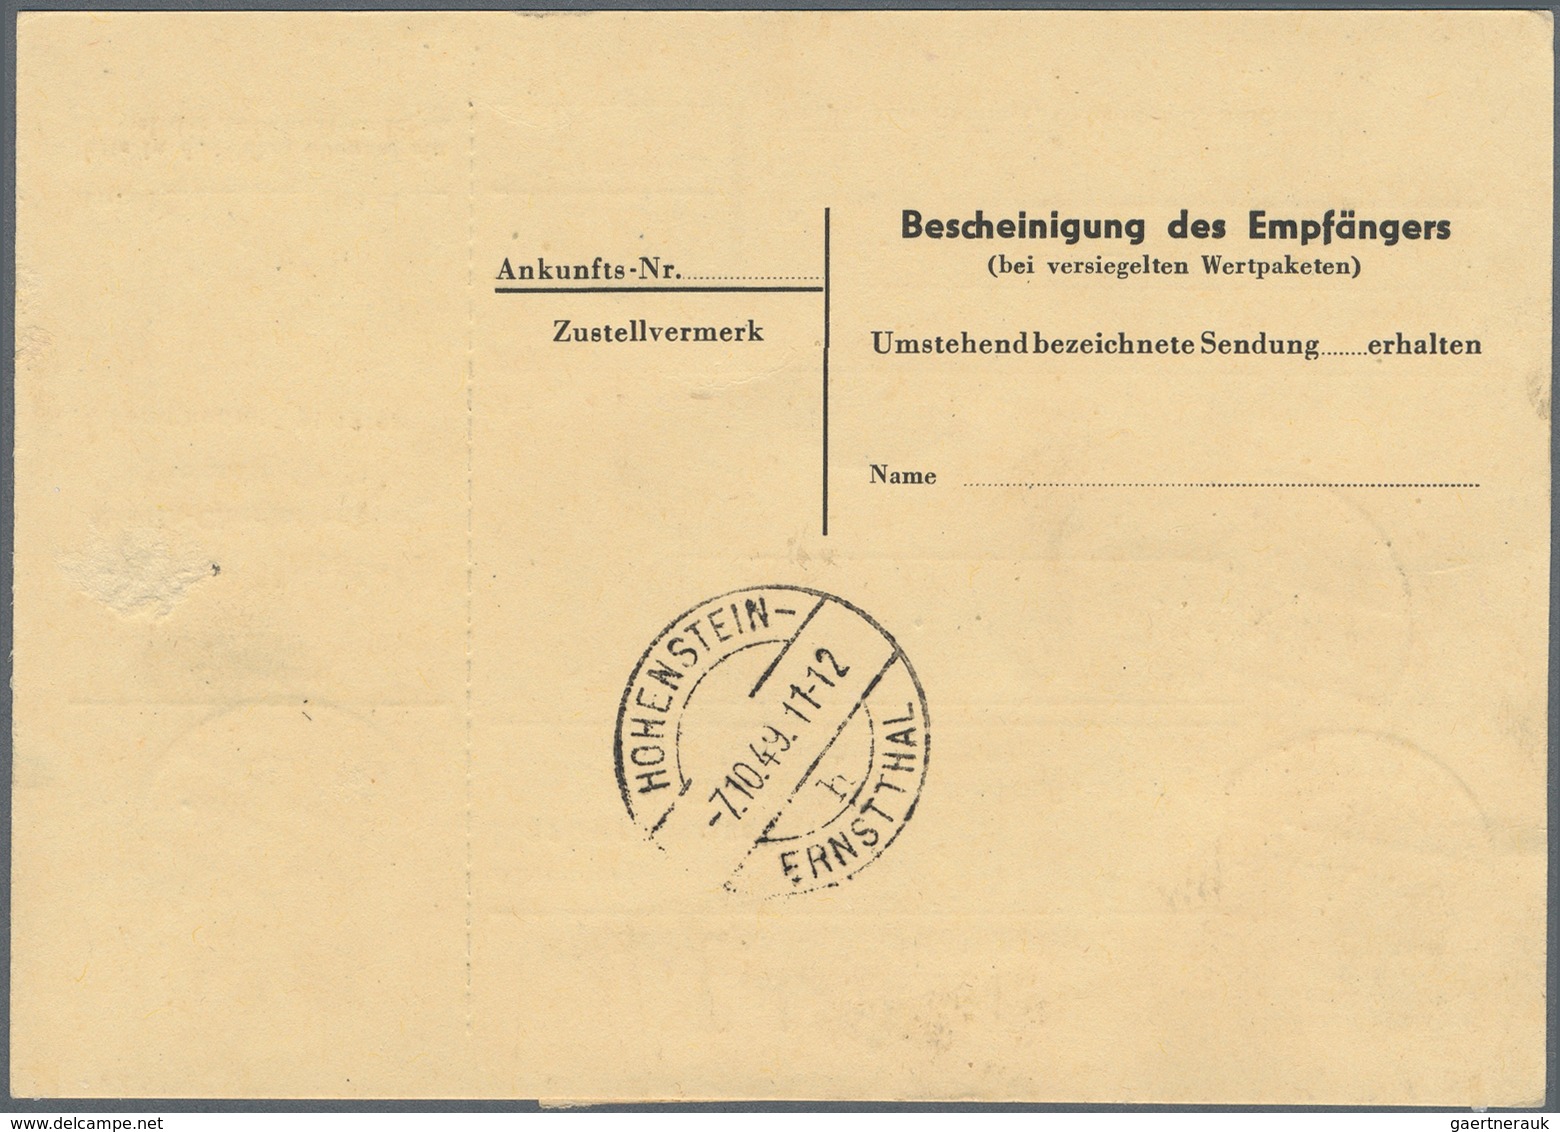 Berlin: 60(Paar) U. 80 Pf. Rotaufdruck Zusammen Auf Paketkarte Ab Berlin-Charlottenburg Vom 4.10.49 - Covers & Documents